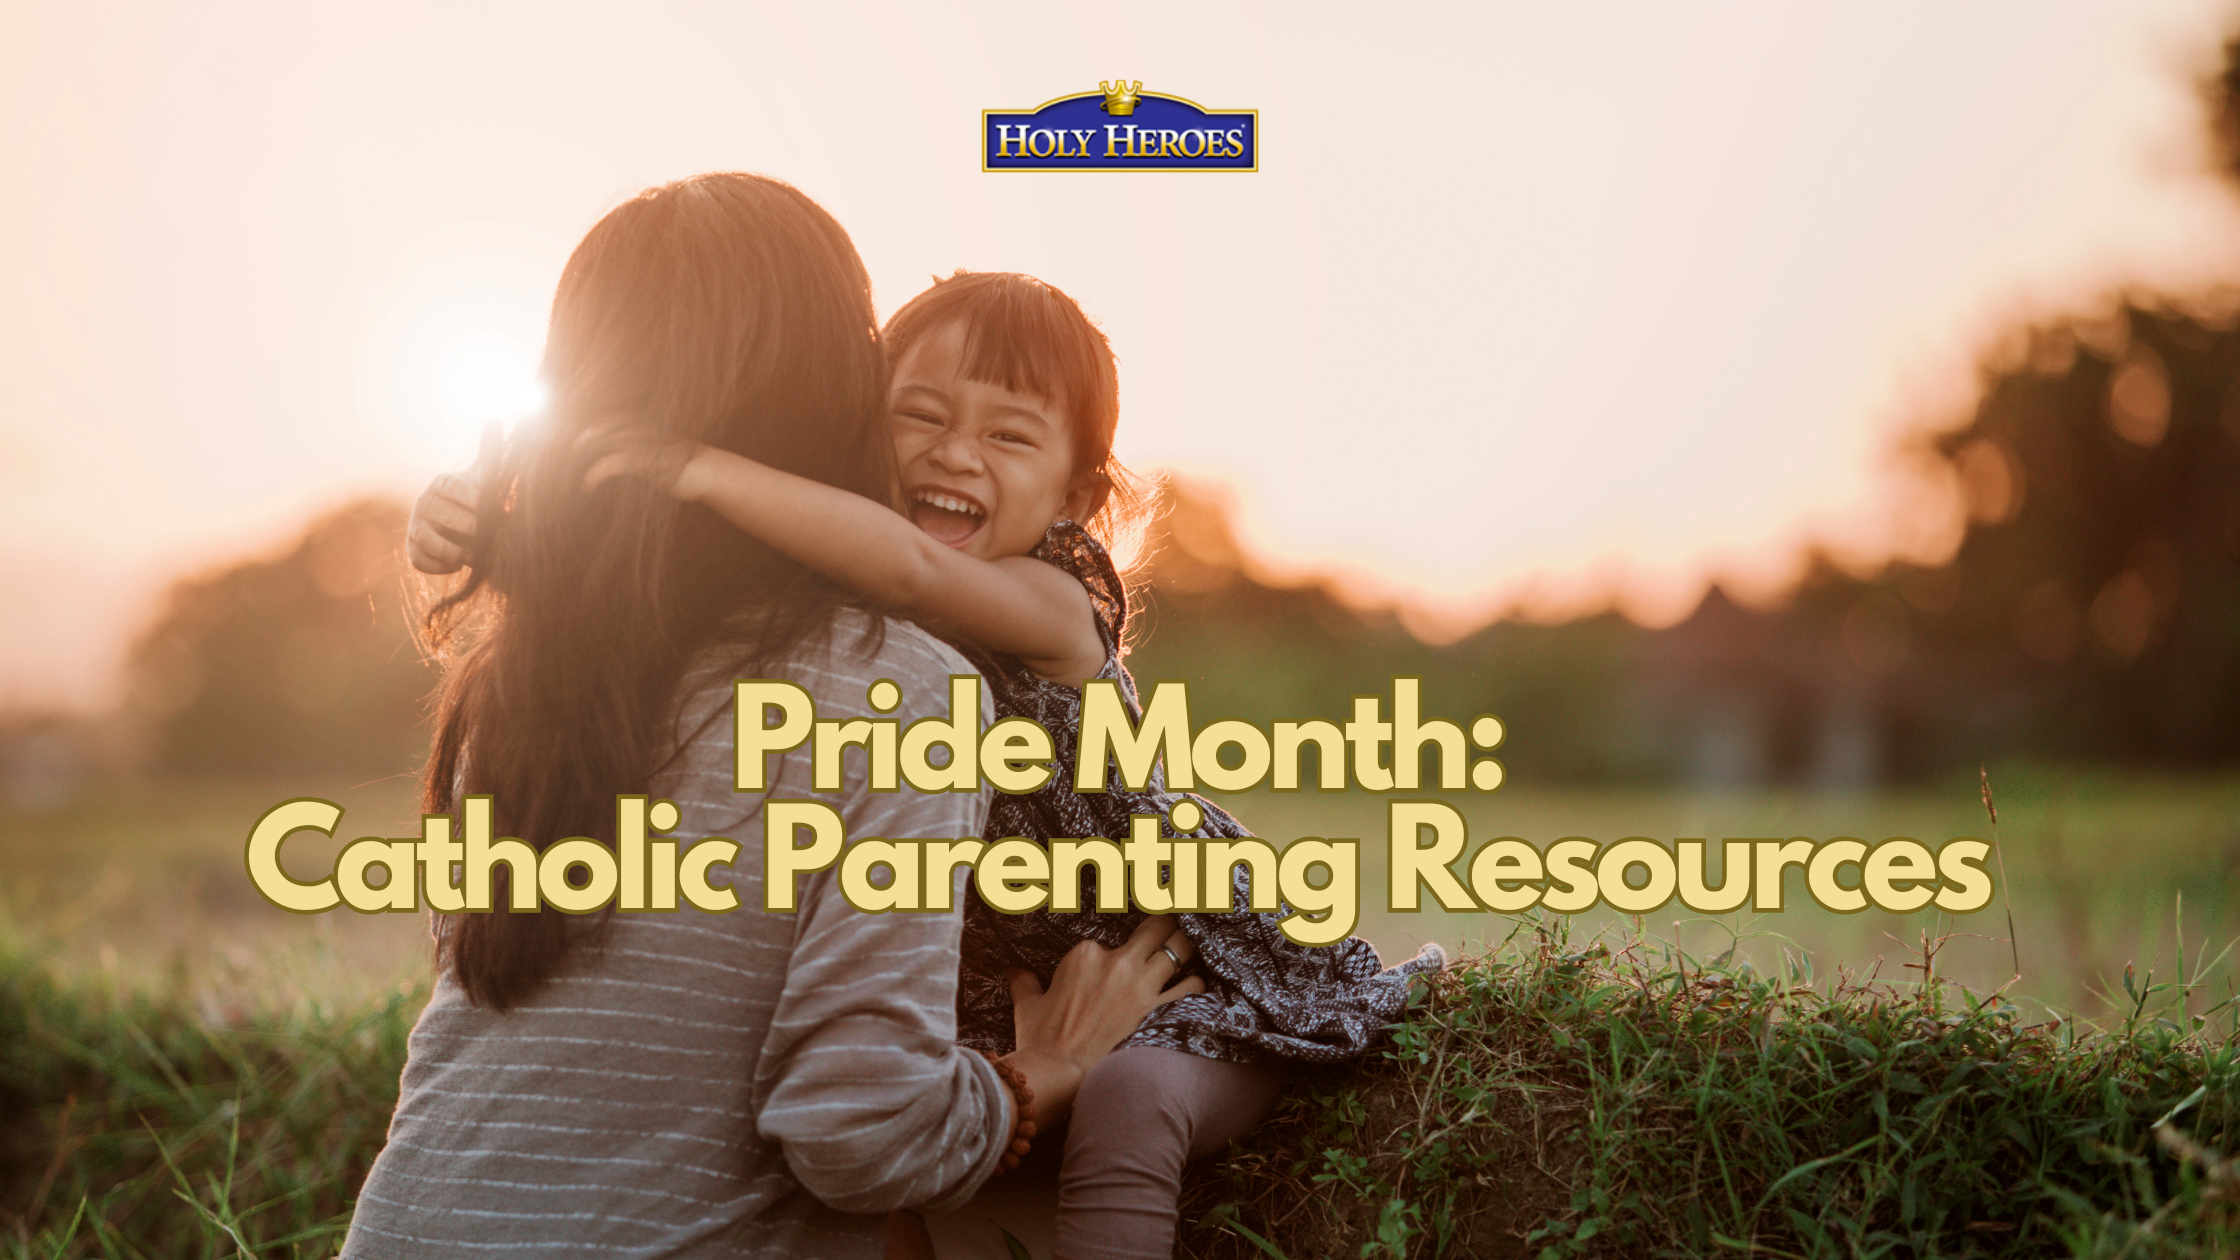 Catholic Parenting during Pride Month